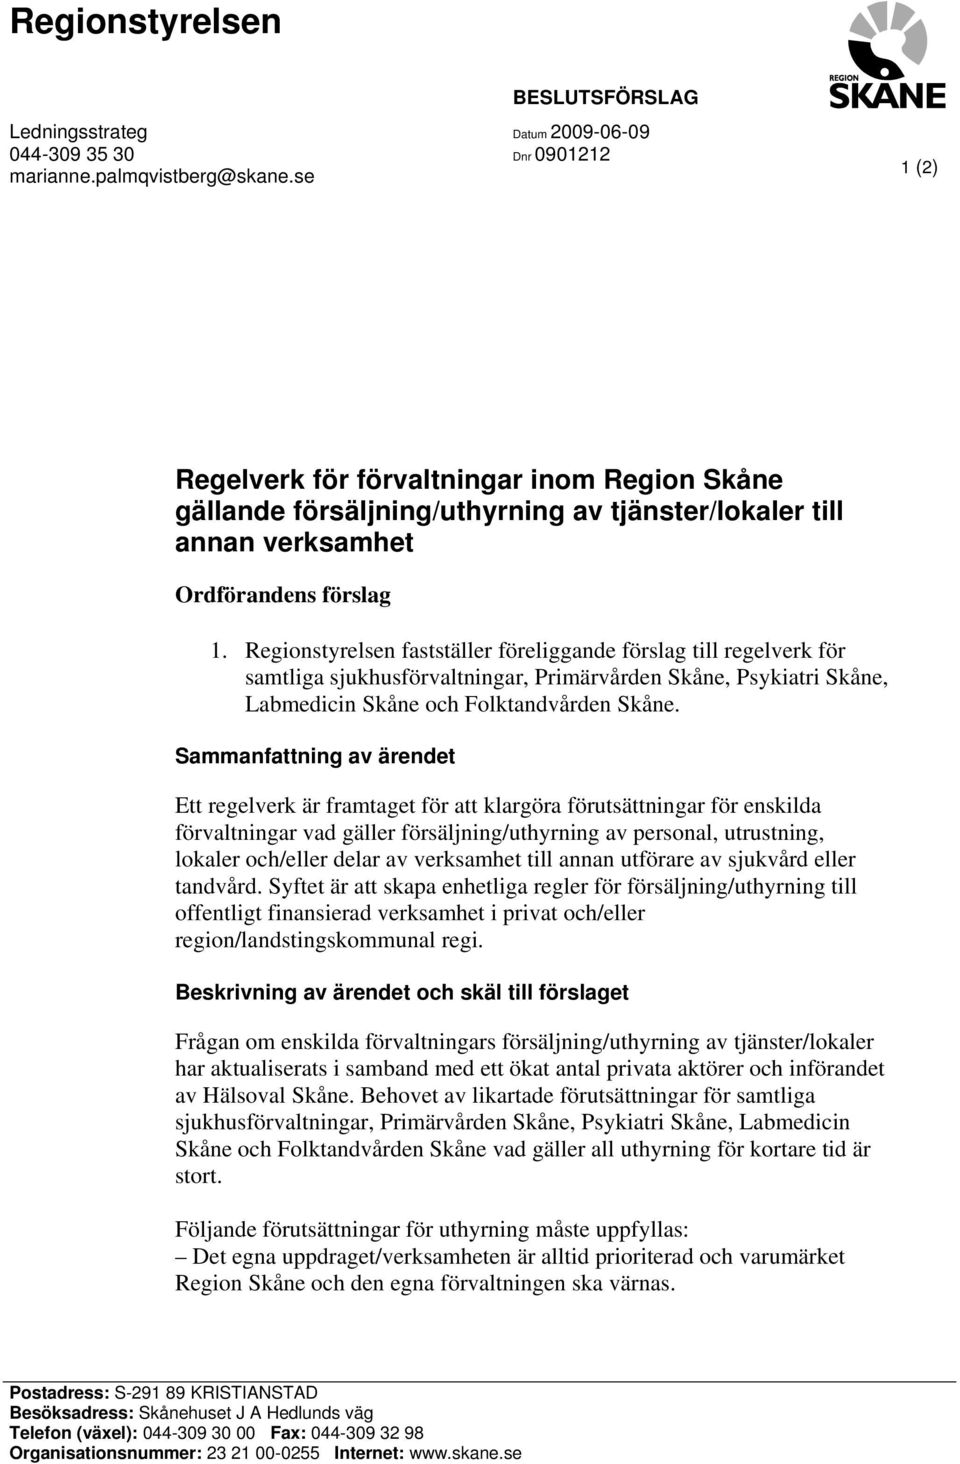 Regionstyrelsen fastställer föreliggande förslag till regelverk för samtliga sjukhusförvaltningar, Primärvården Skåne, Psykiatri Skåne, Labmedicin Skåne och Folktandvården Skåne.